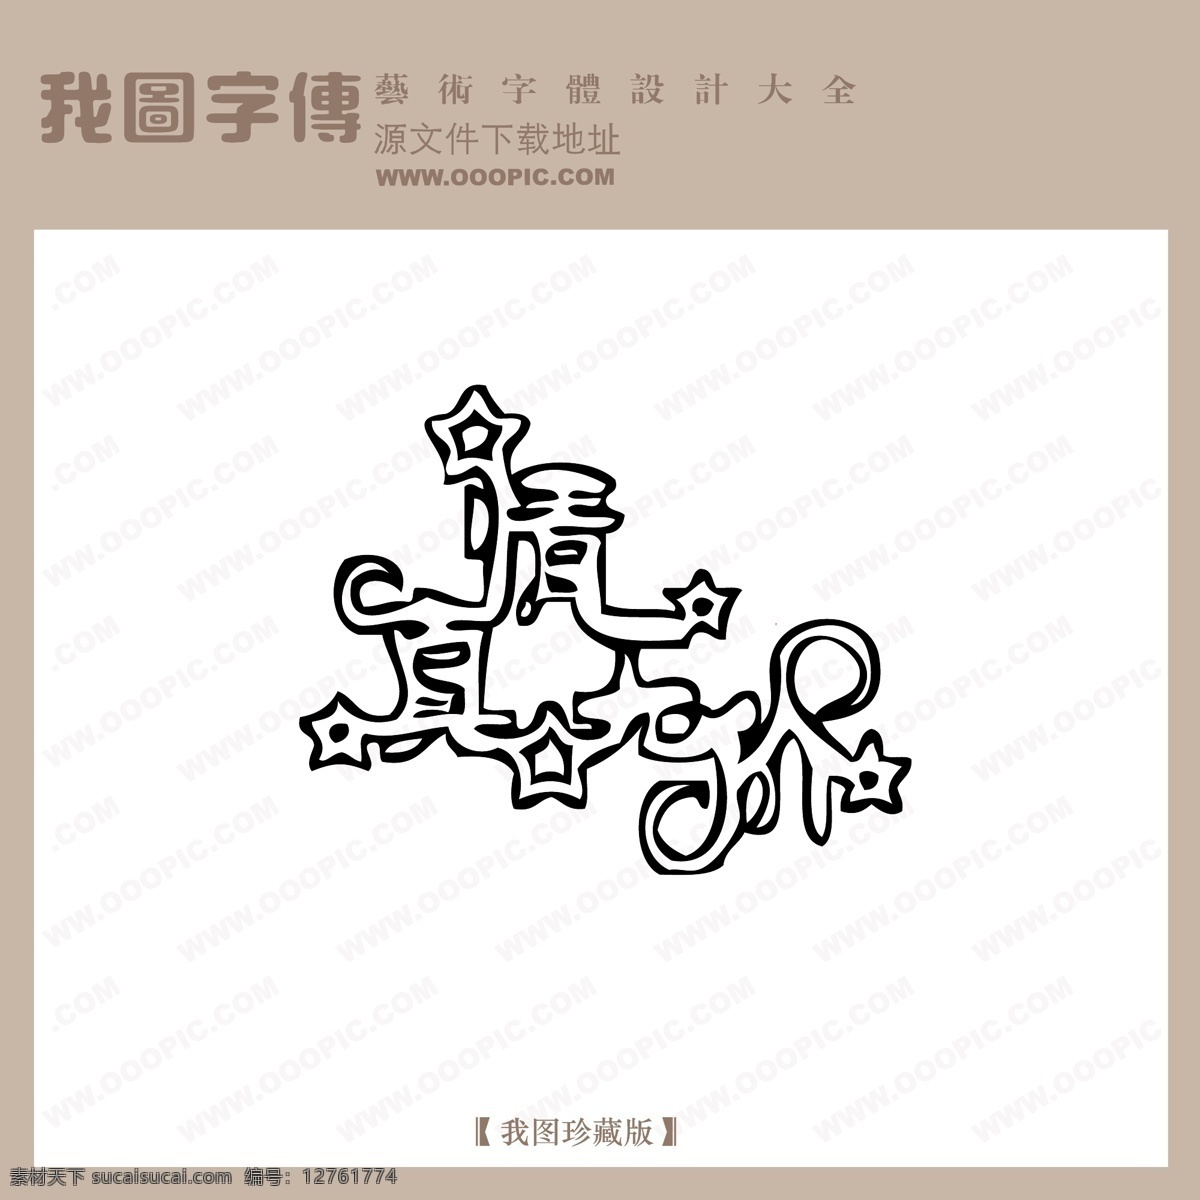 真情 无价 中文 现代艺术 字 中国 字体 创意 美工 艺术 中国字体设计 真情无价 矢量图